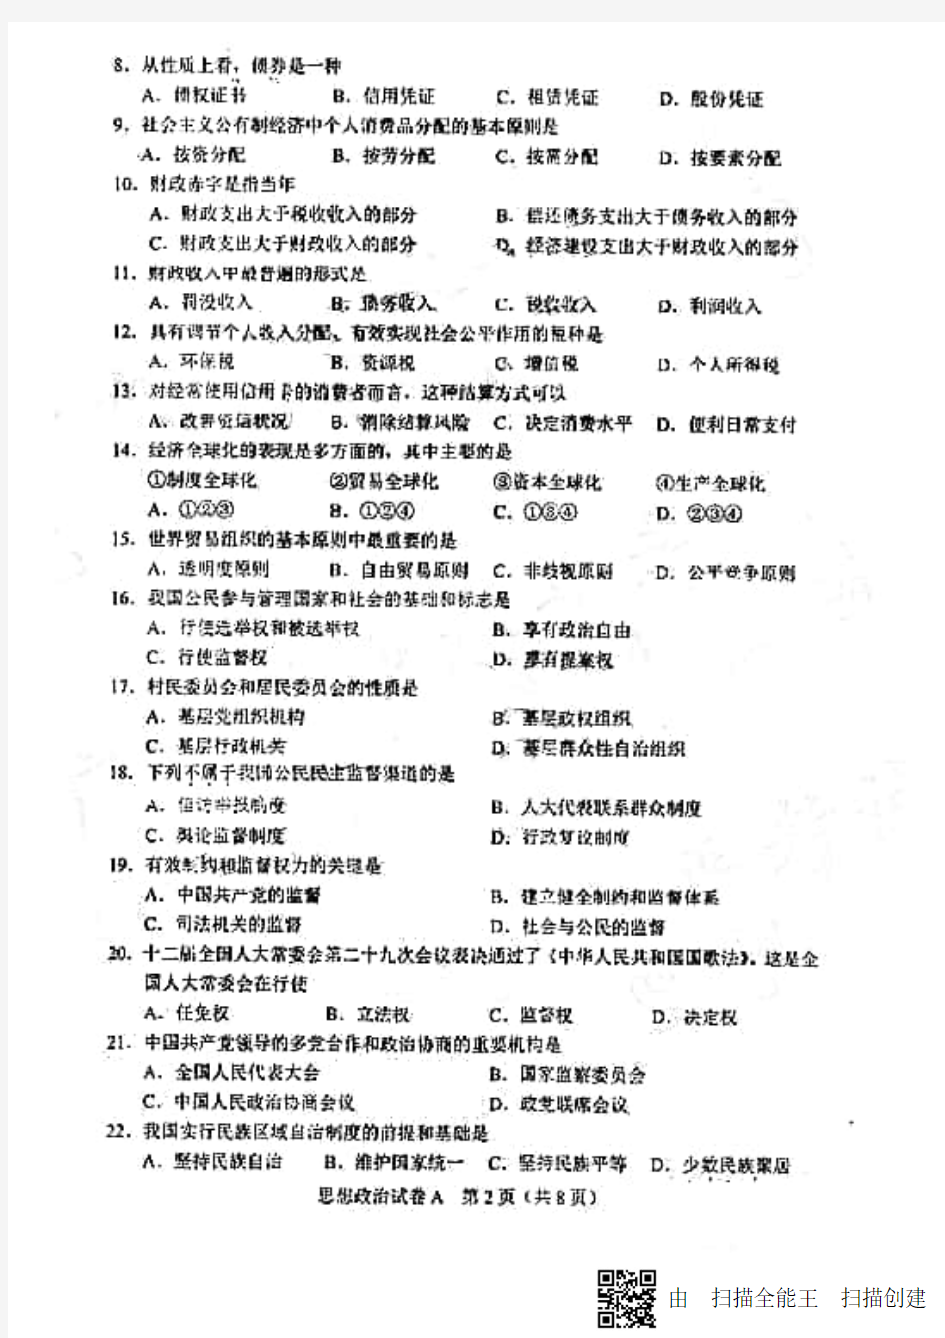 2018年6月广东省普通高中学业水平考试政治真题